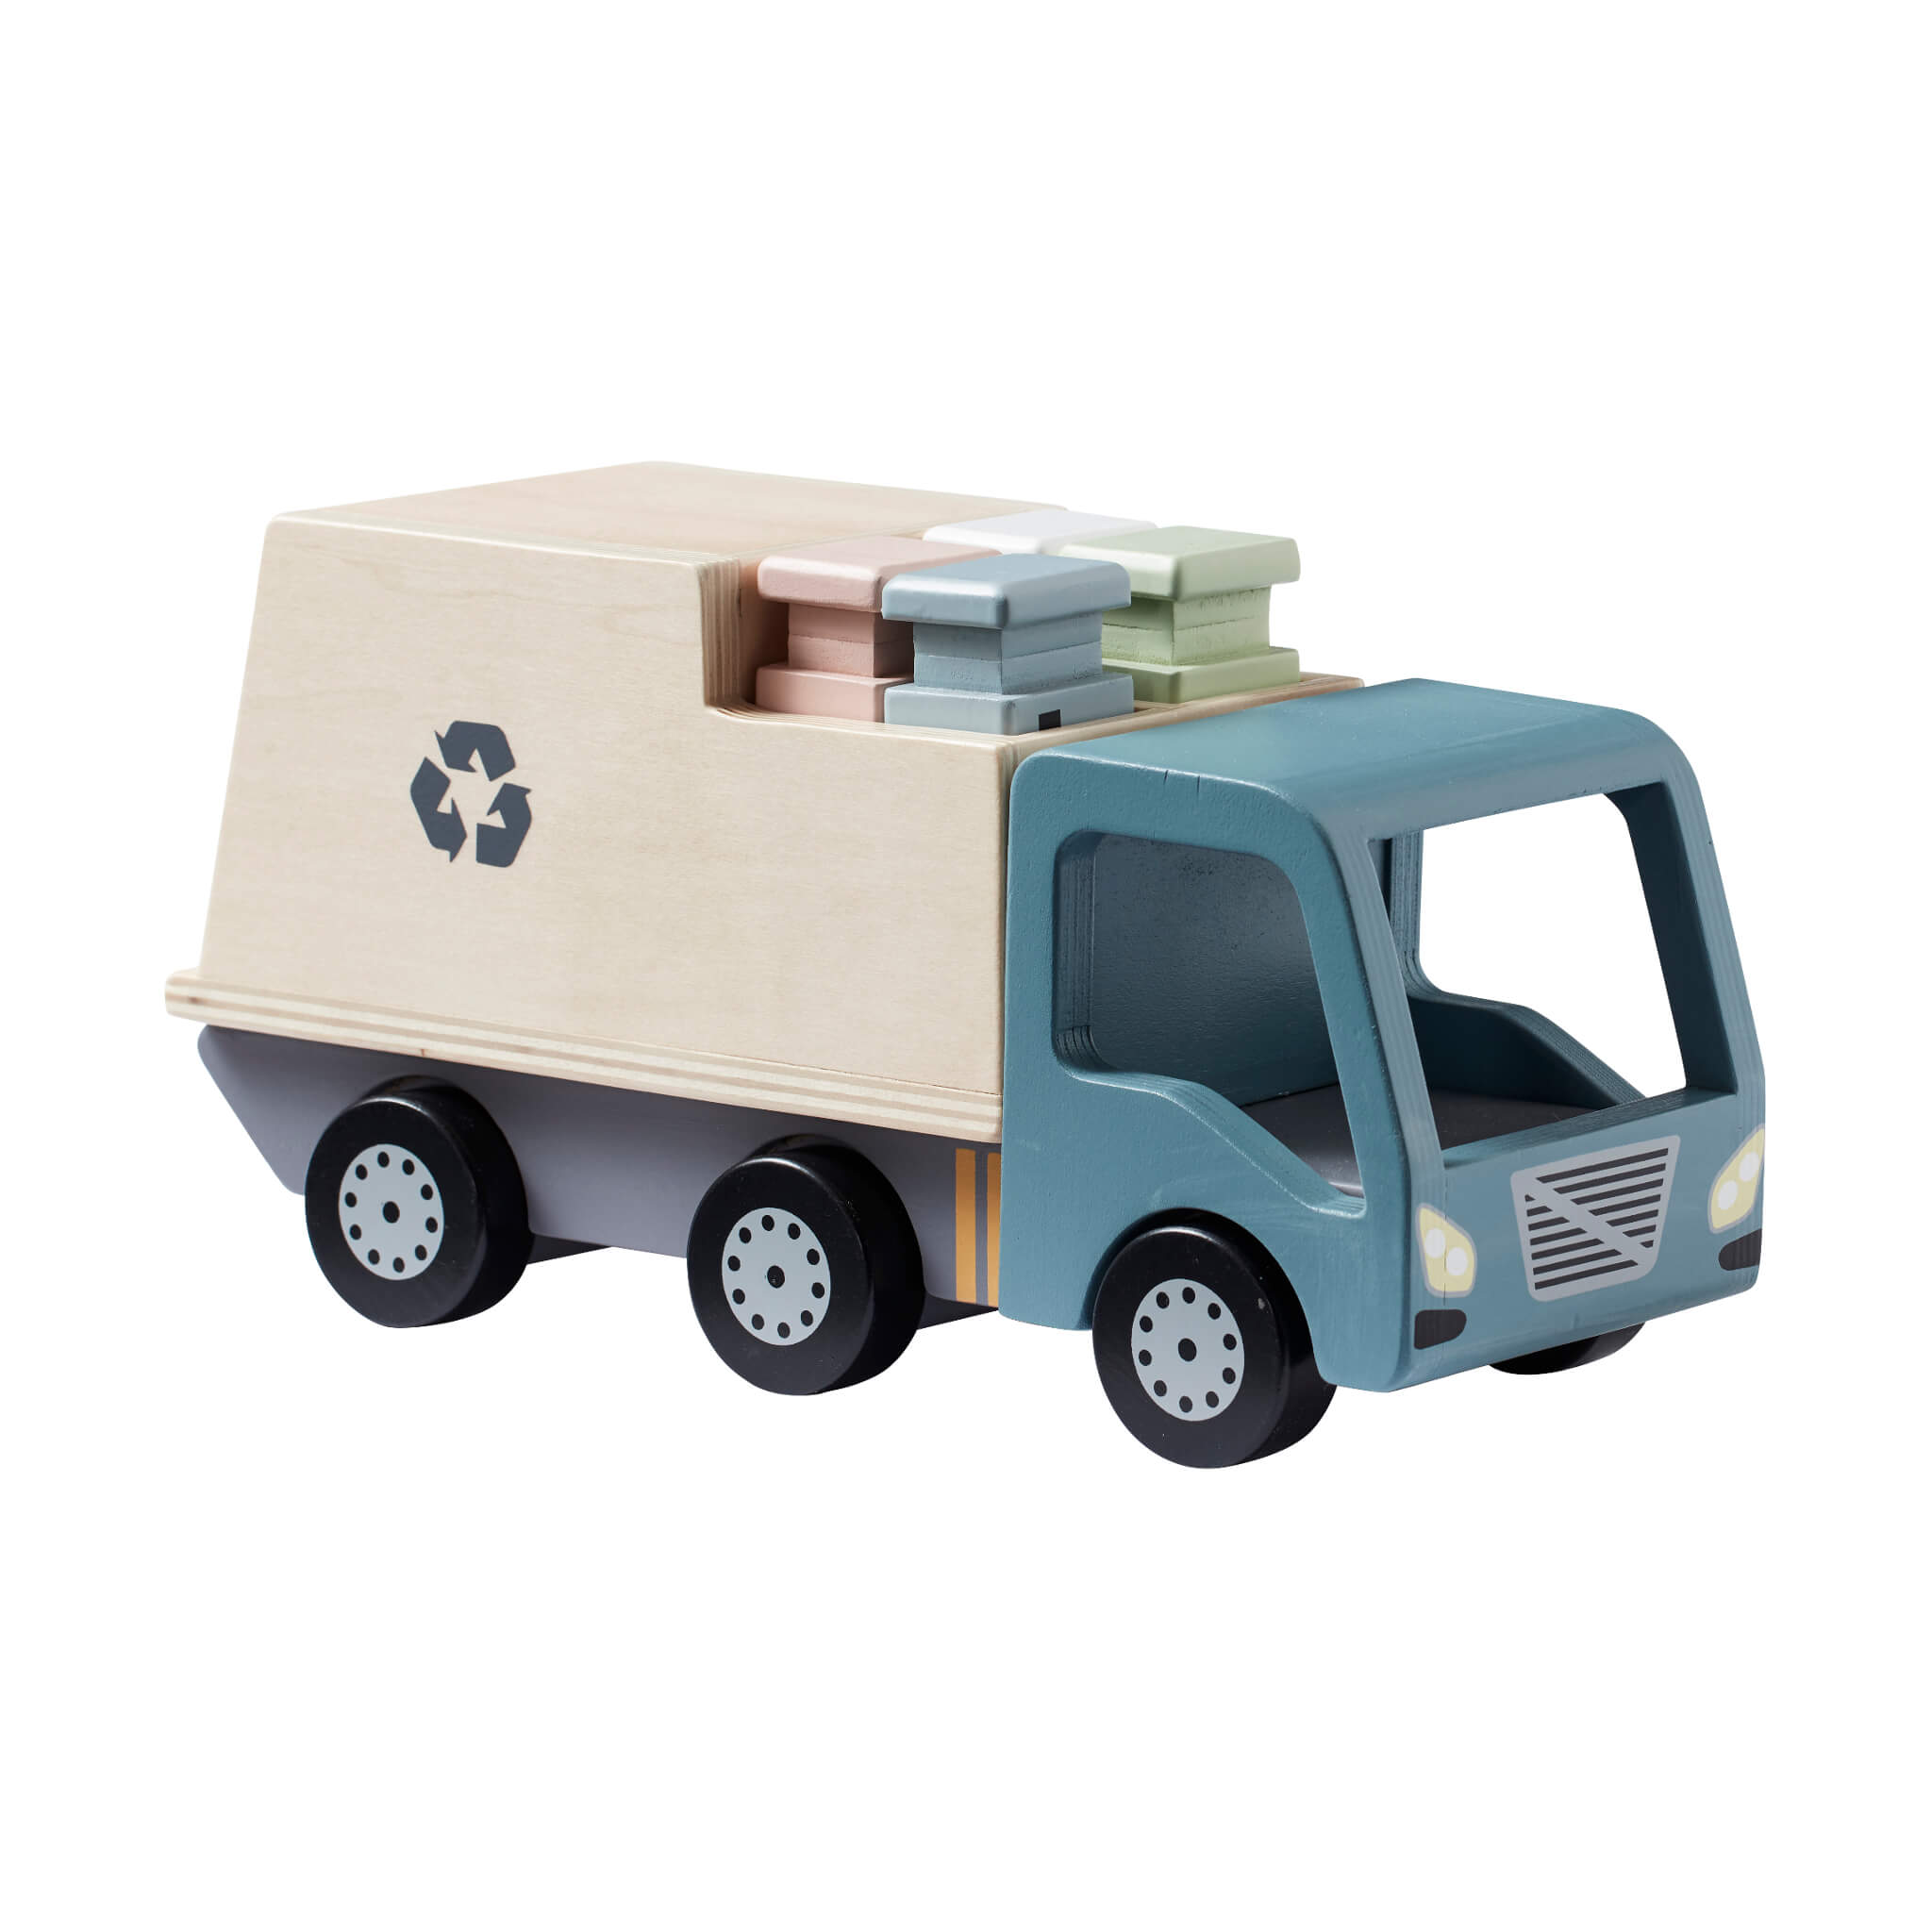 Kids Concept Wooden Aiden City Toy Garbage Truck